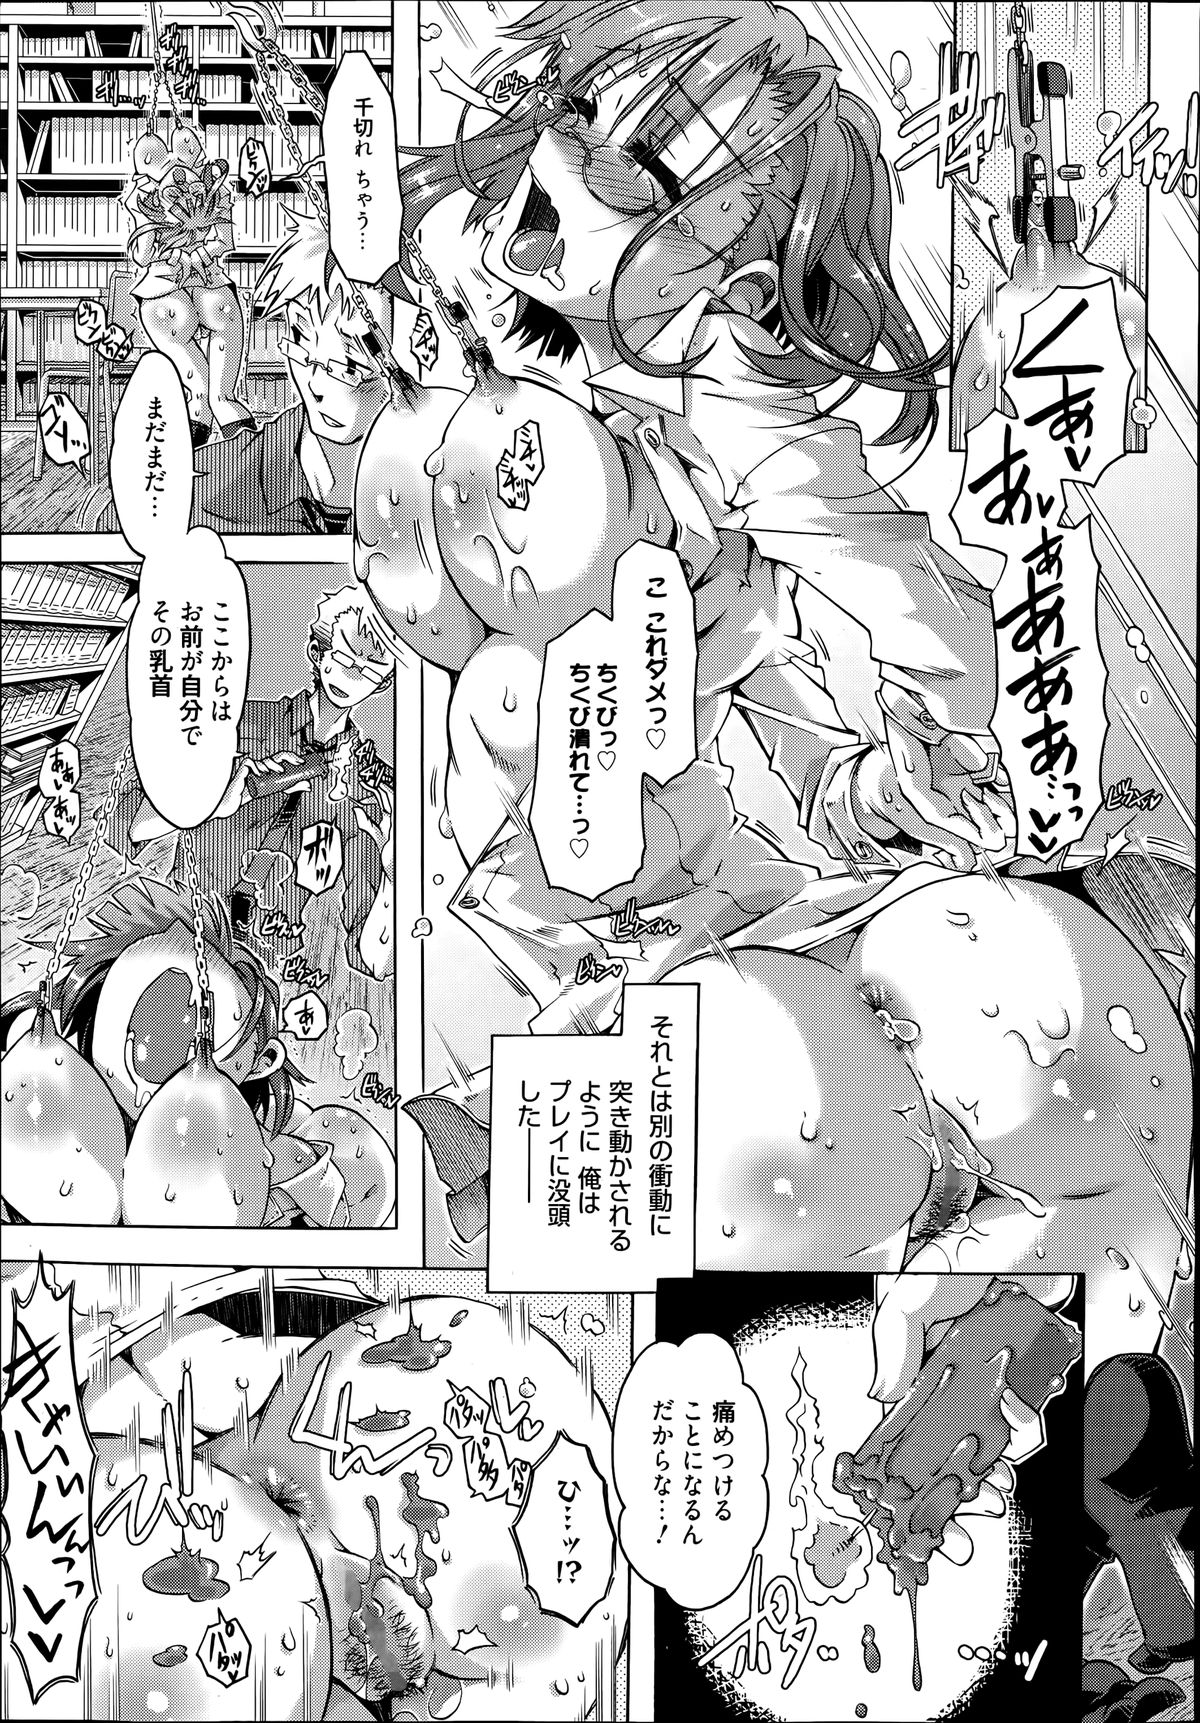 Manga Bangaichi 2014-07 page 29 full